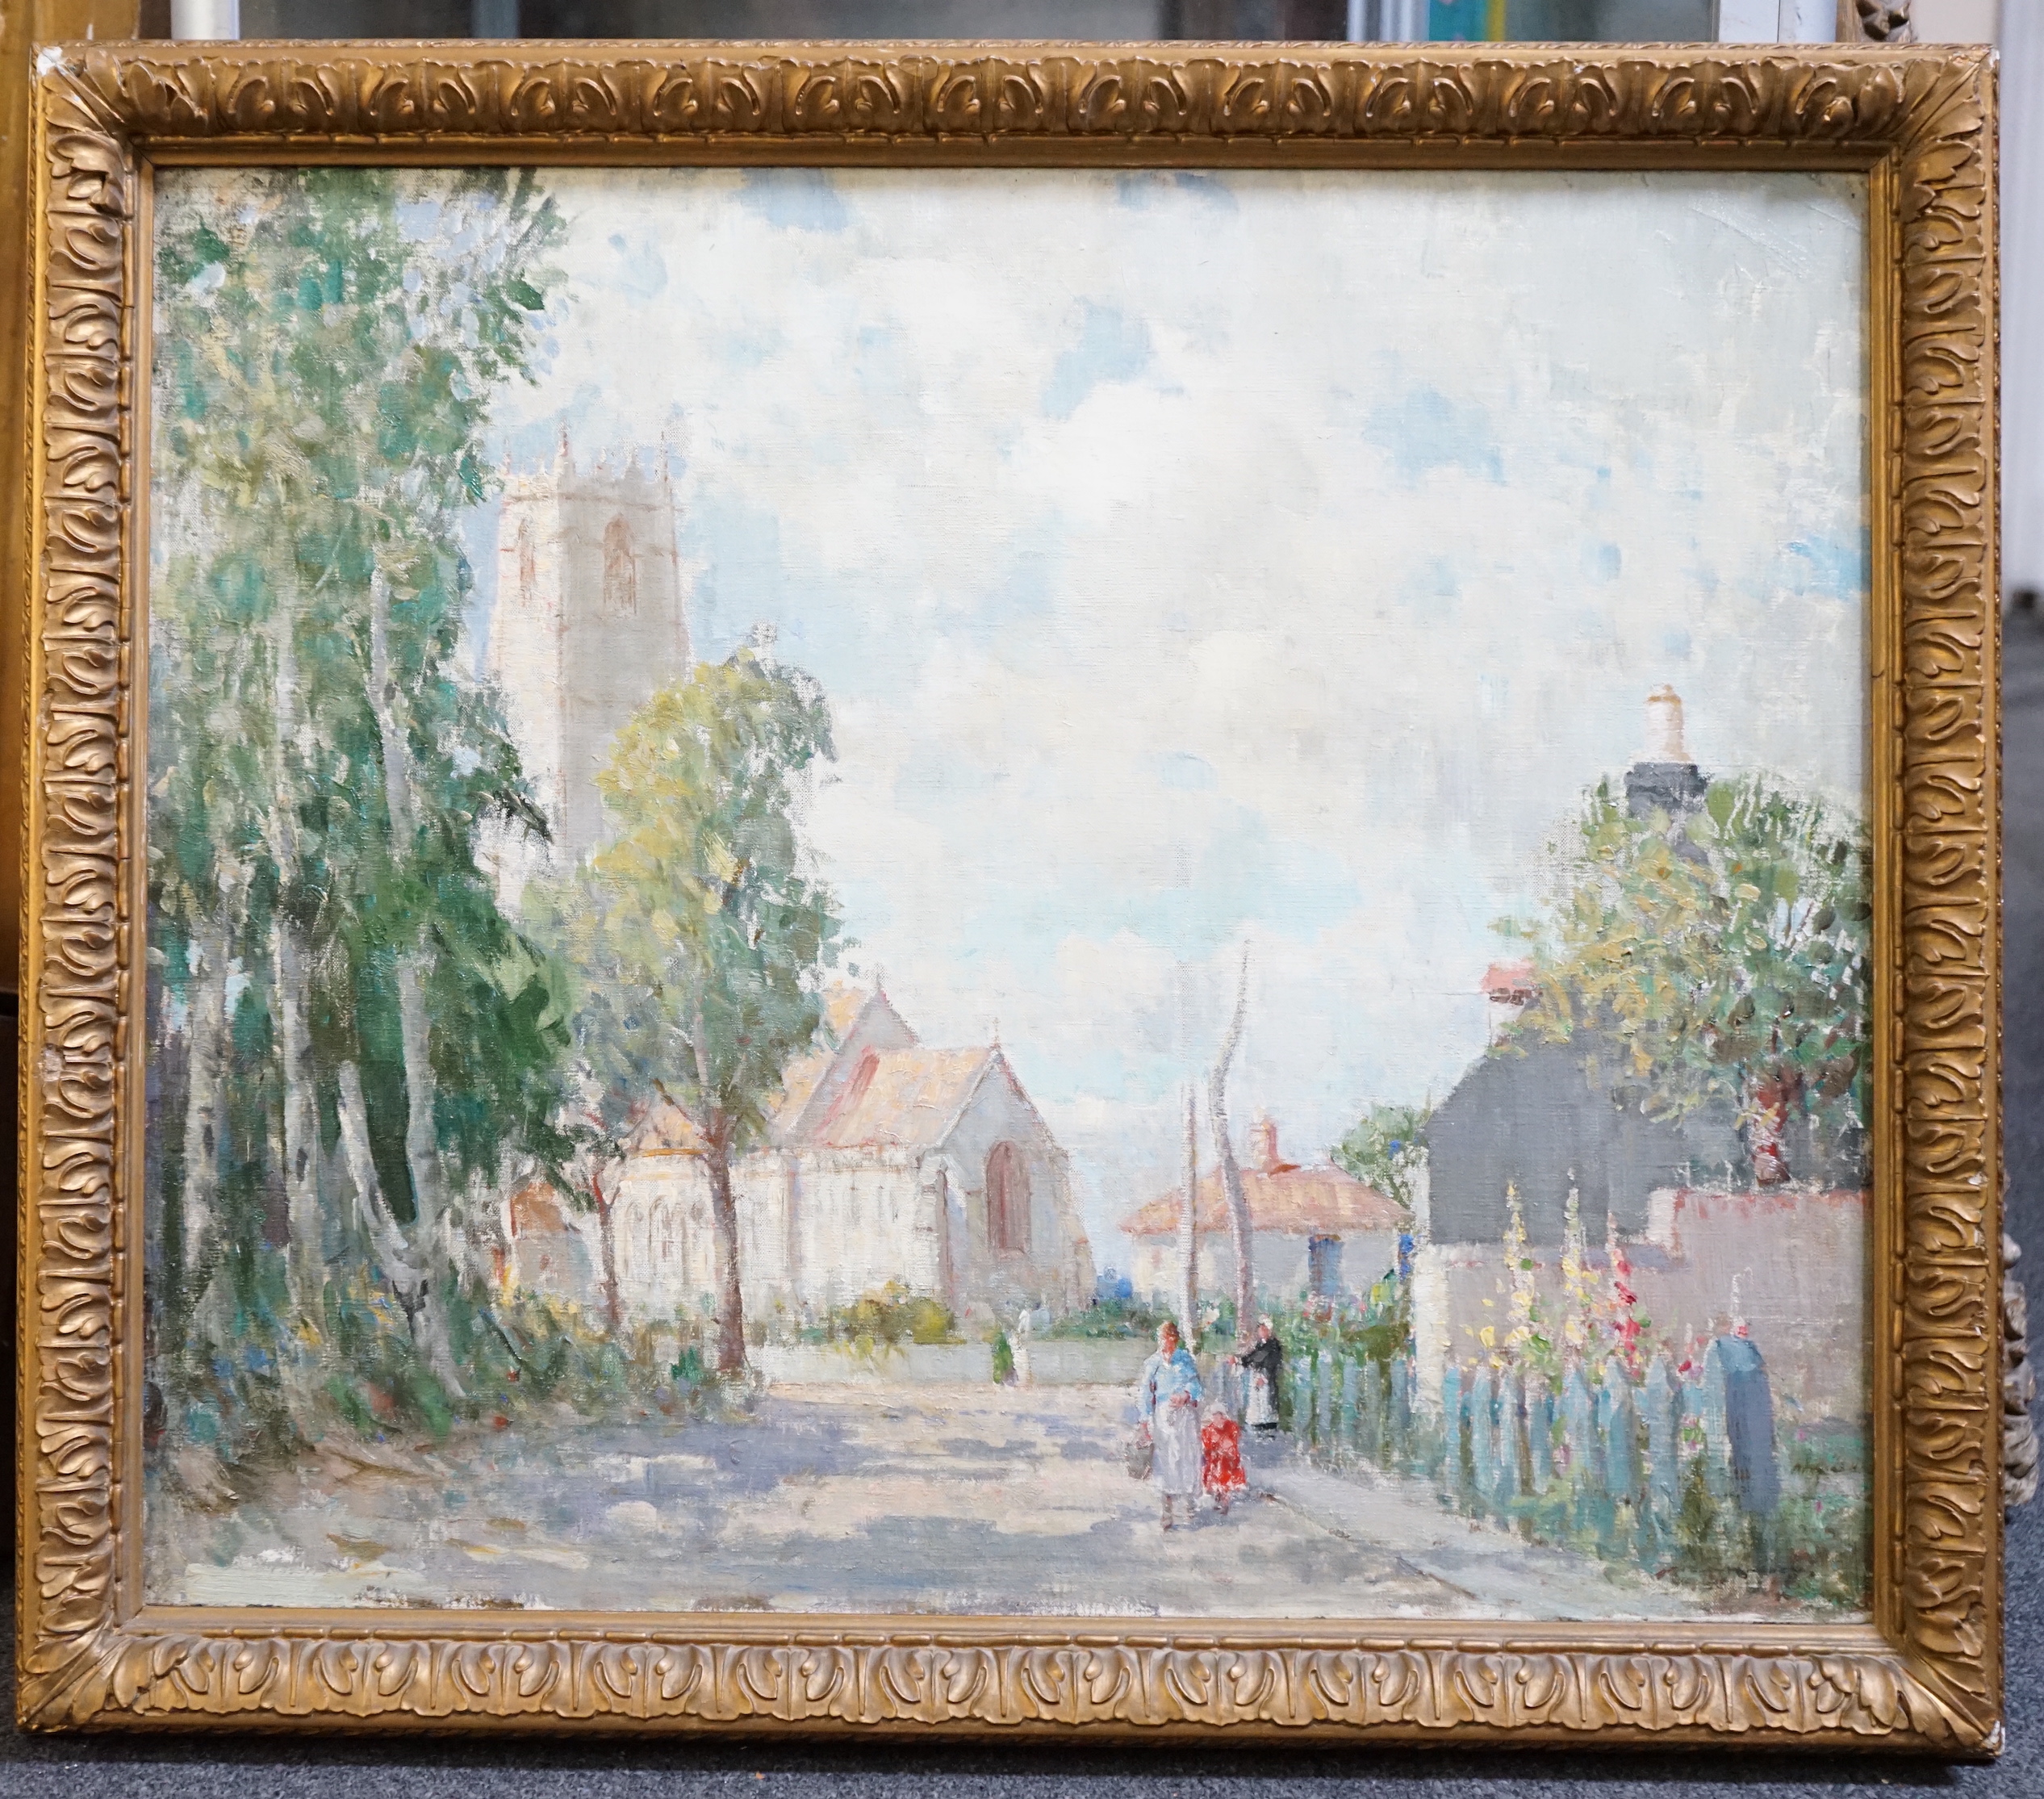 William Lee Hankey (British, 1869-1952), 'Winterton, Norfolk', oil on canvas, 51 x 60cm